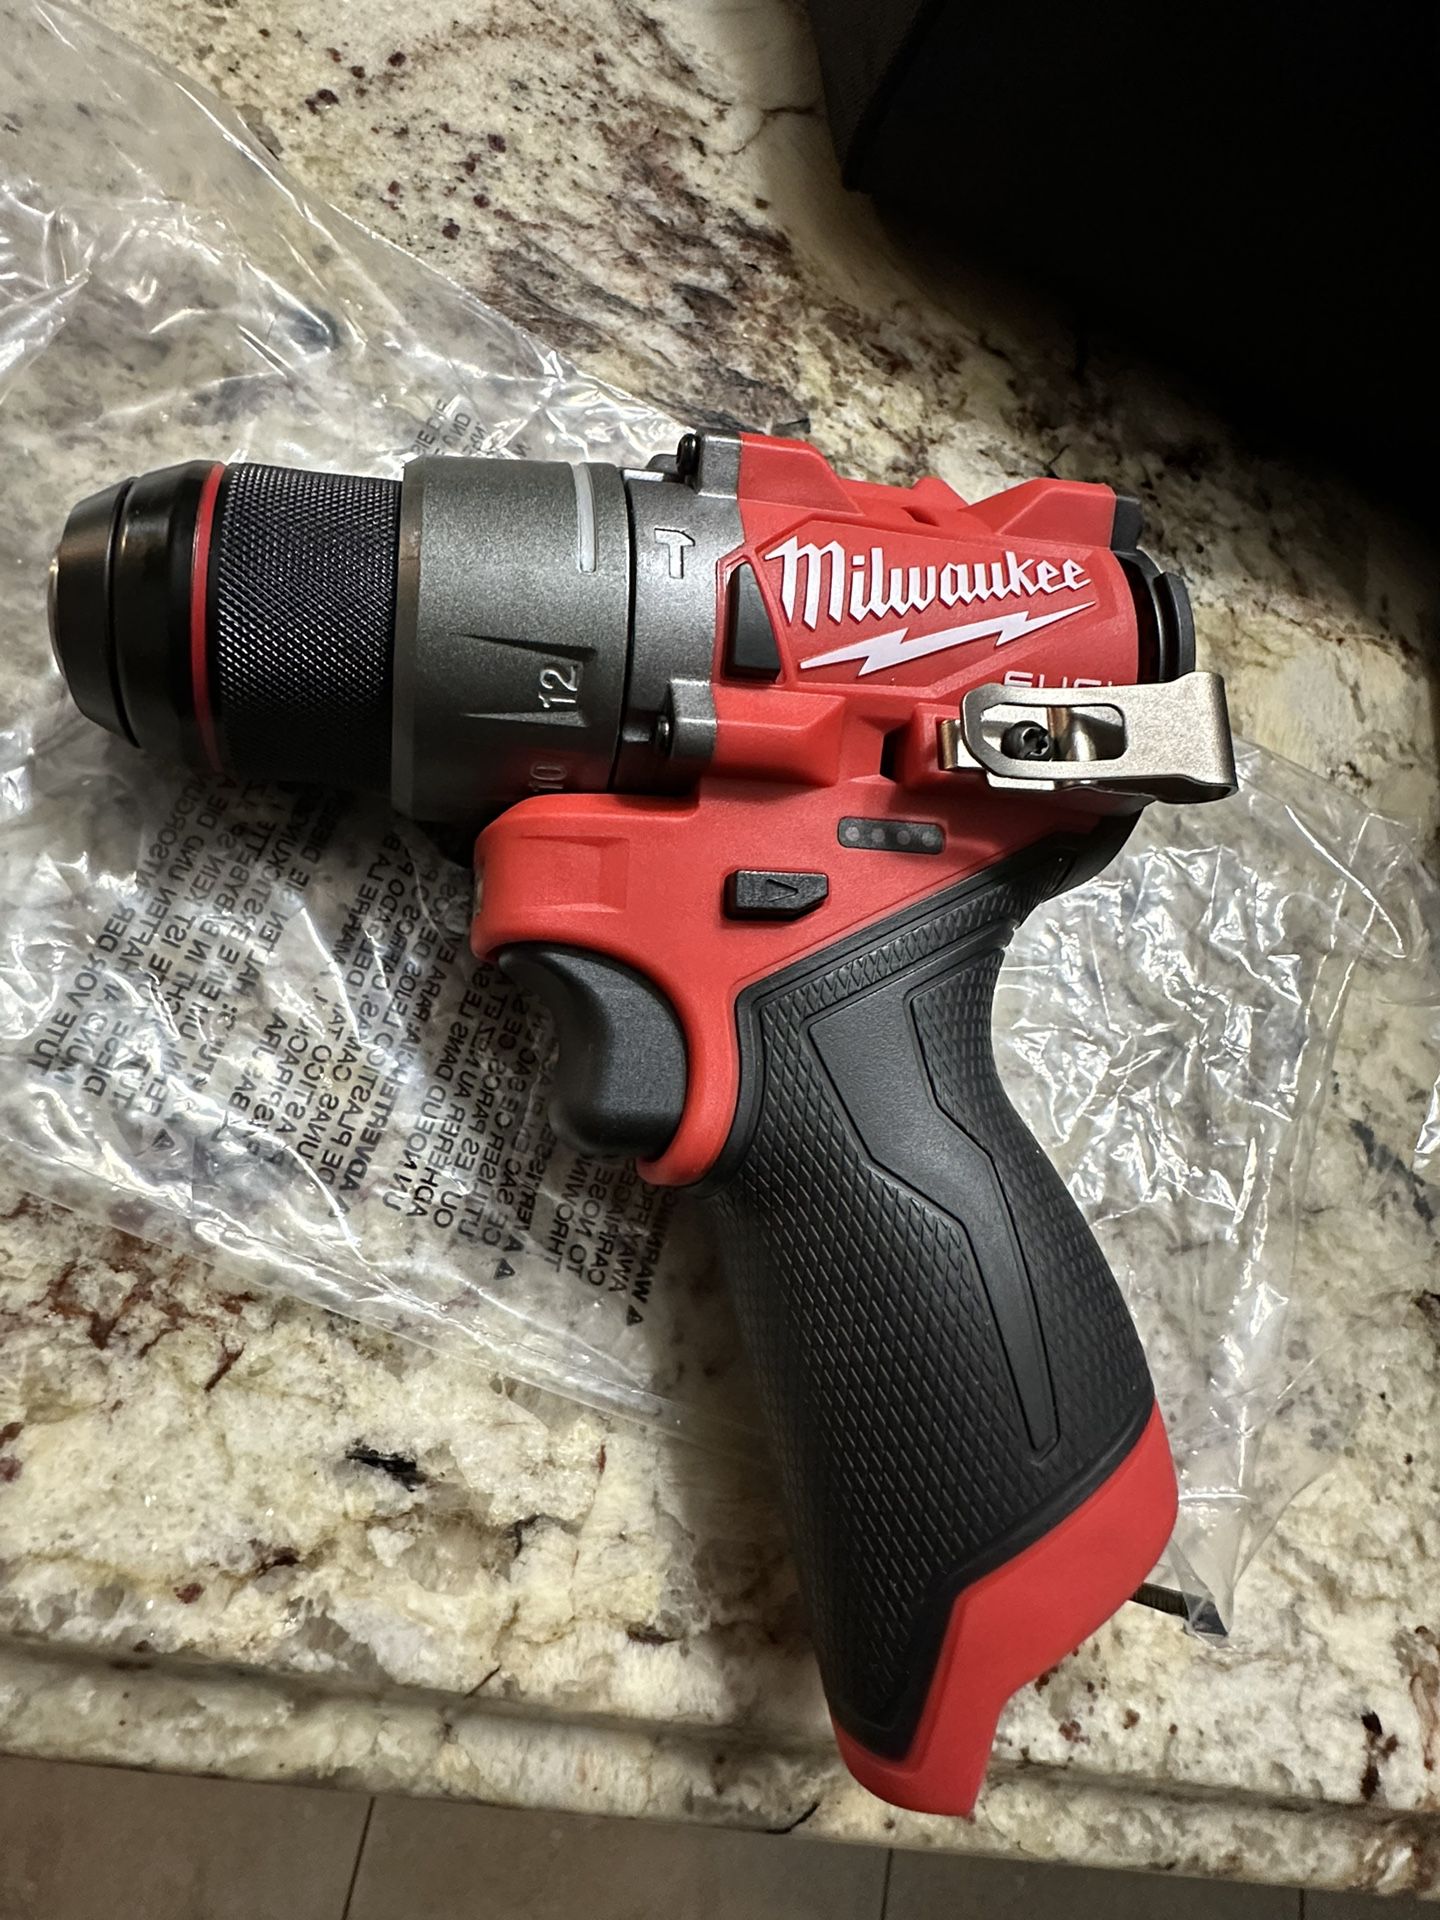 New Milwaukee M12 Hammer Drill